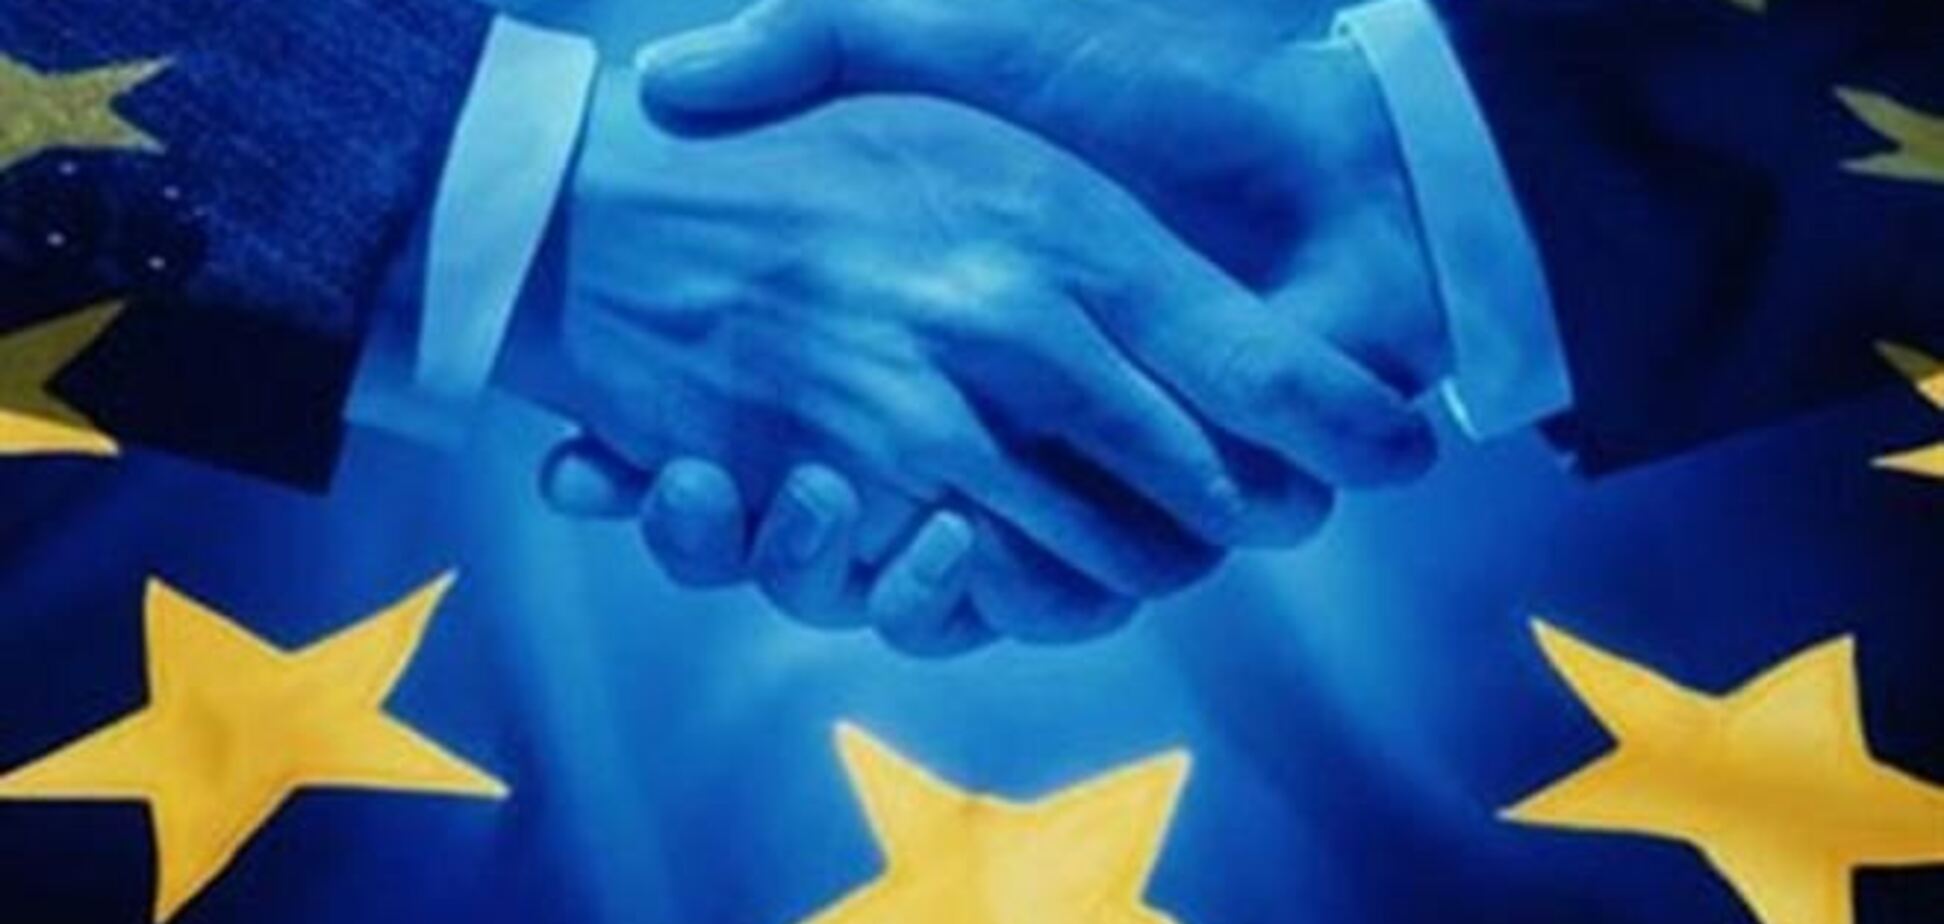 Европа приветствует начало урегулирования кризиса в Украине